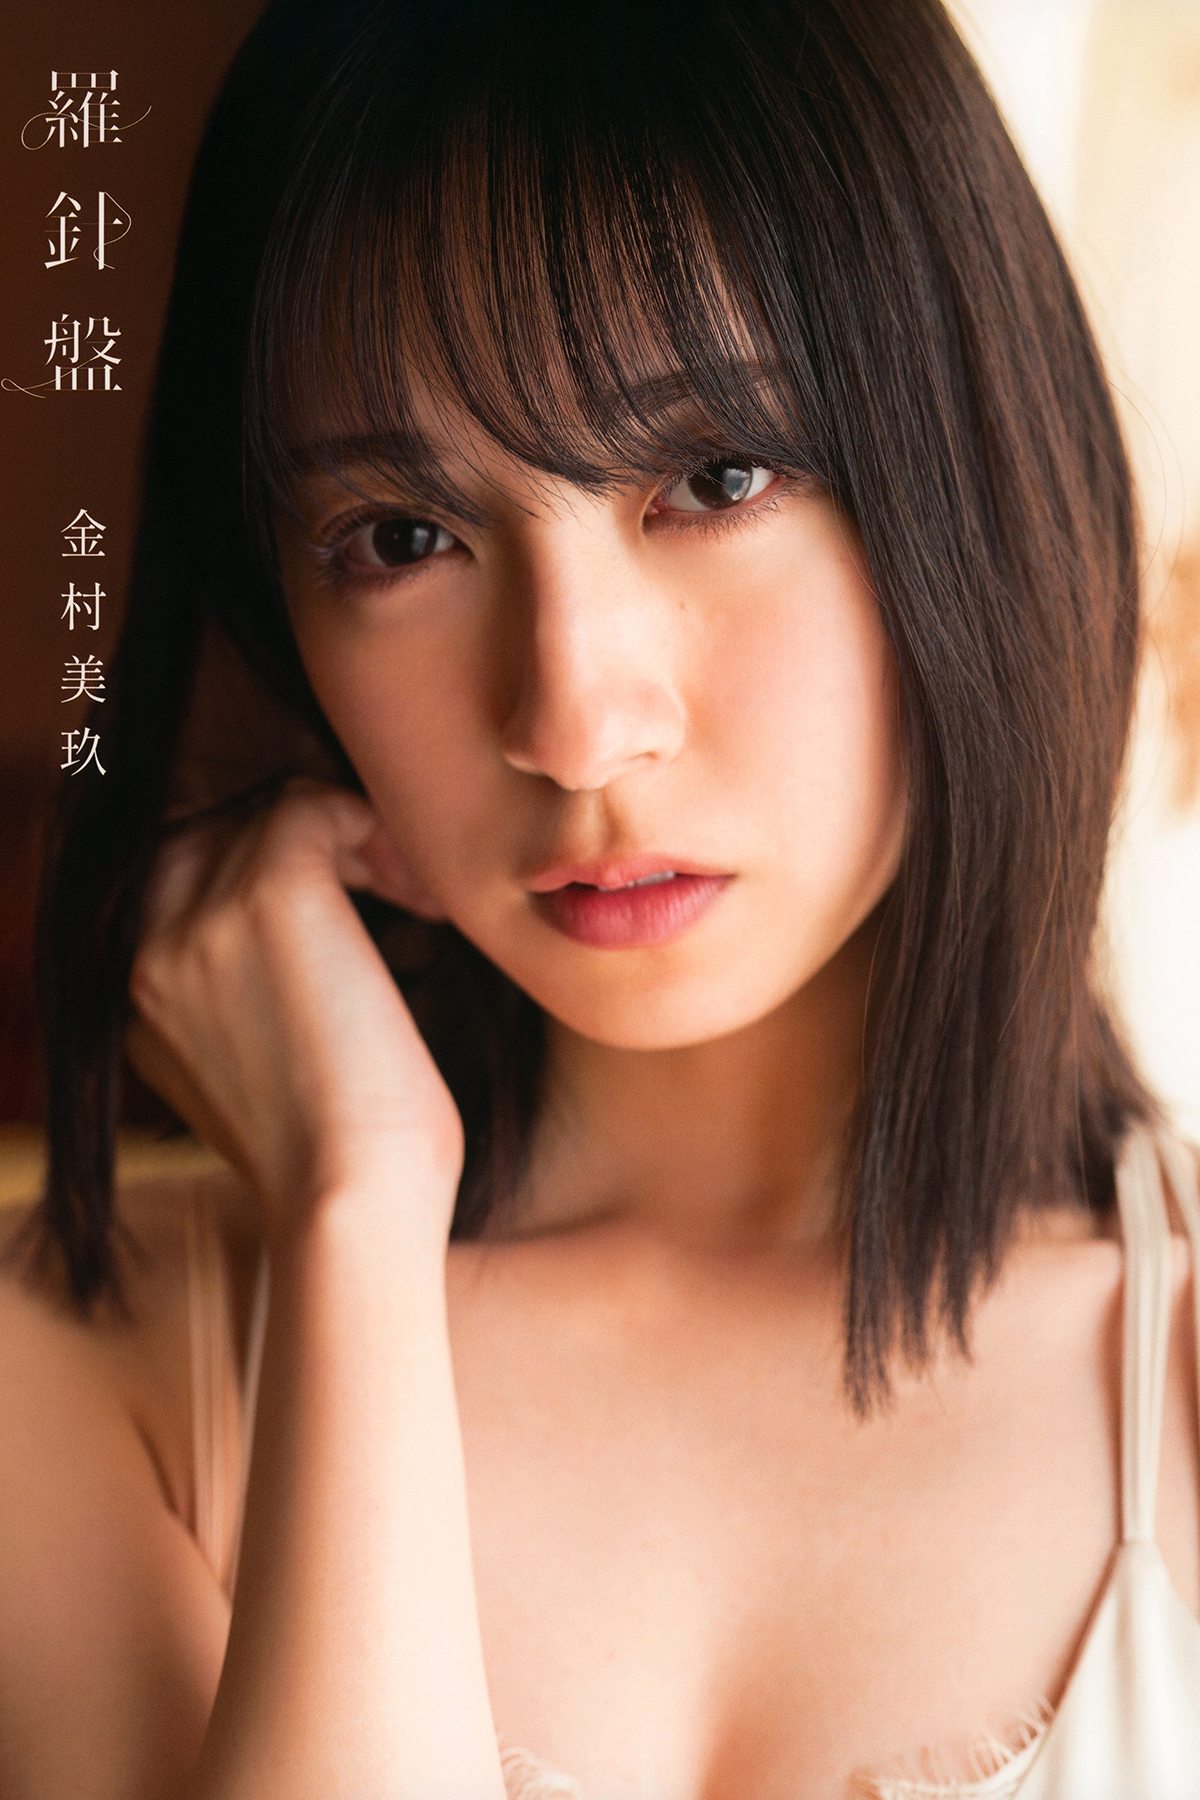 Kanemura Miku 1st Photobook v2 B